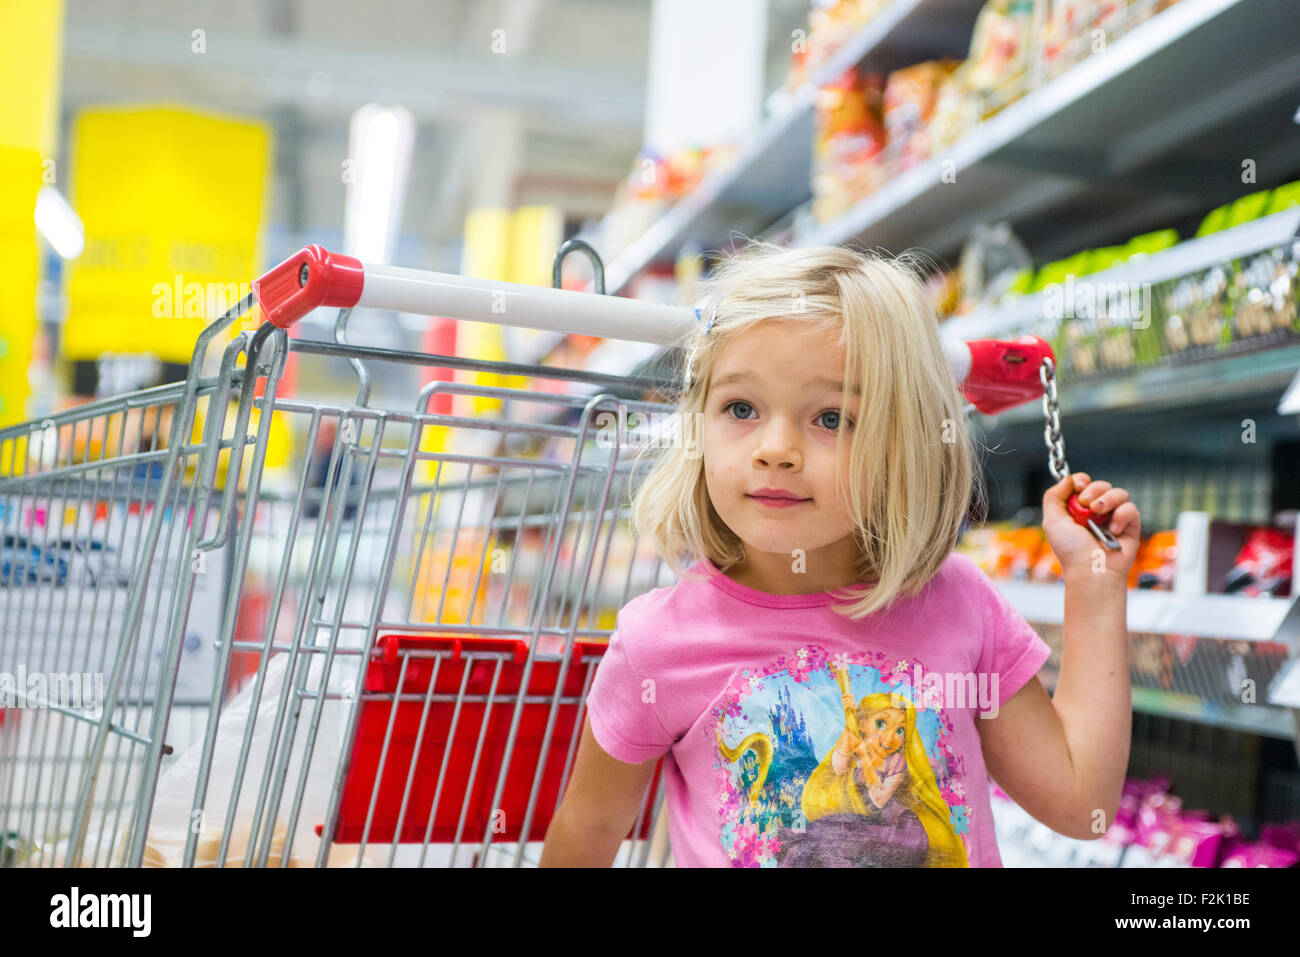 Kleines Kind blondes Mädchen Einkauf im Supermarkt, Wagen schieben, auf der Suche nach Süßigkeiten Stockfoto